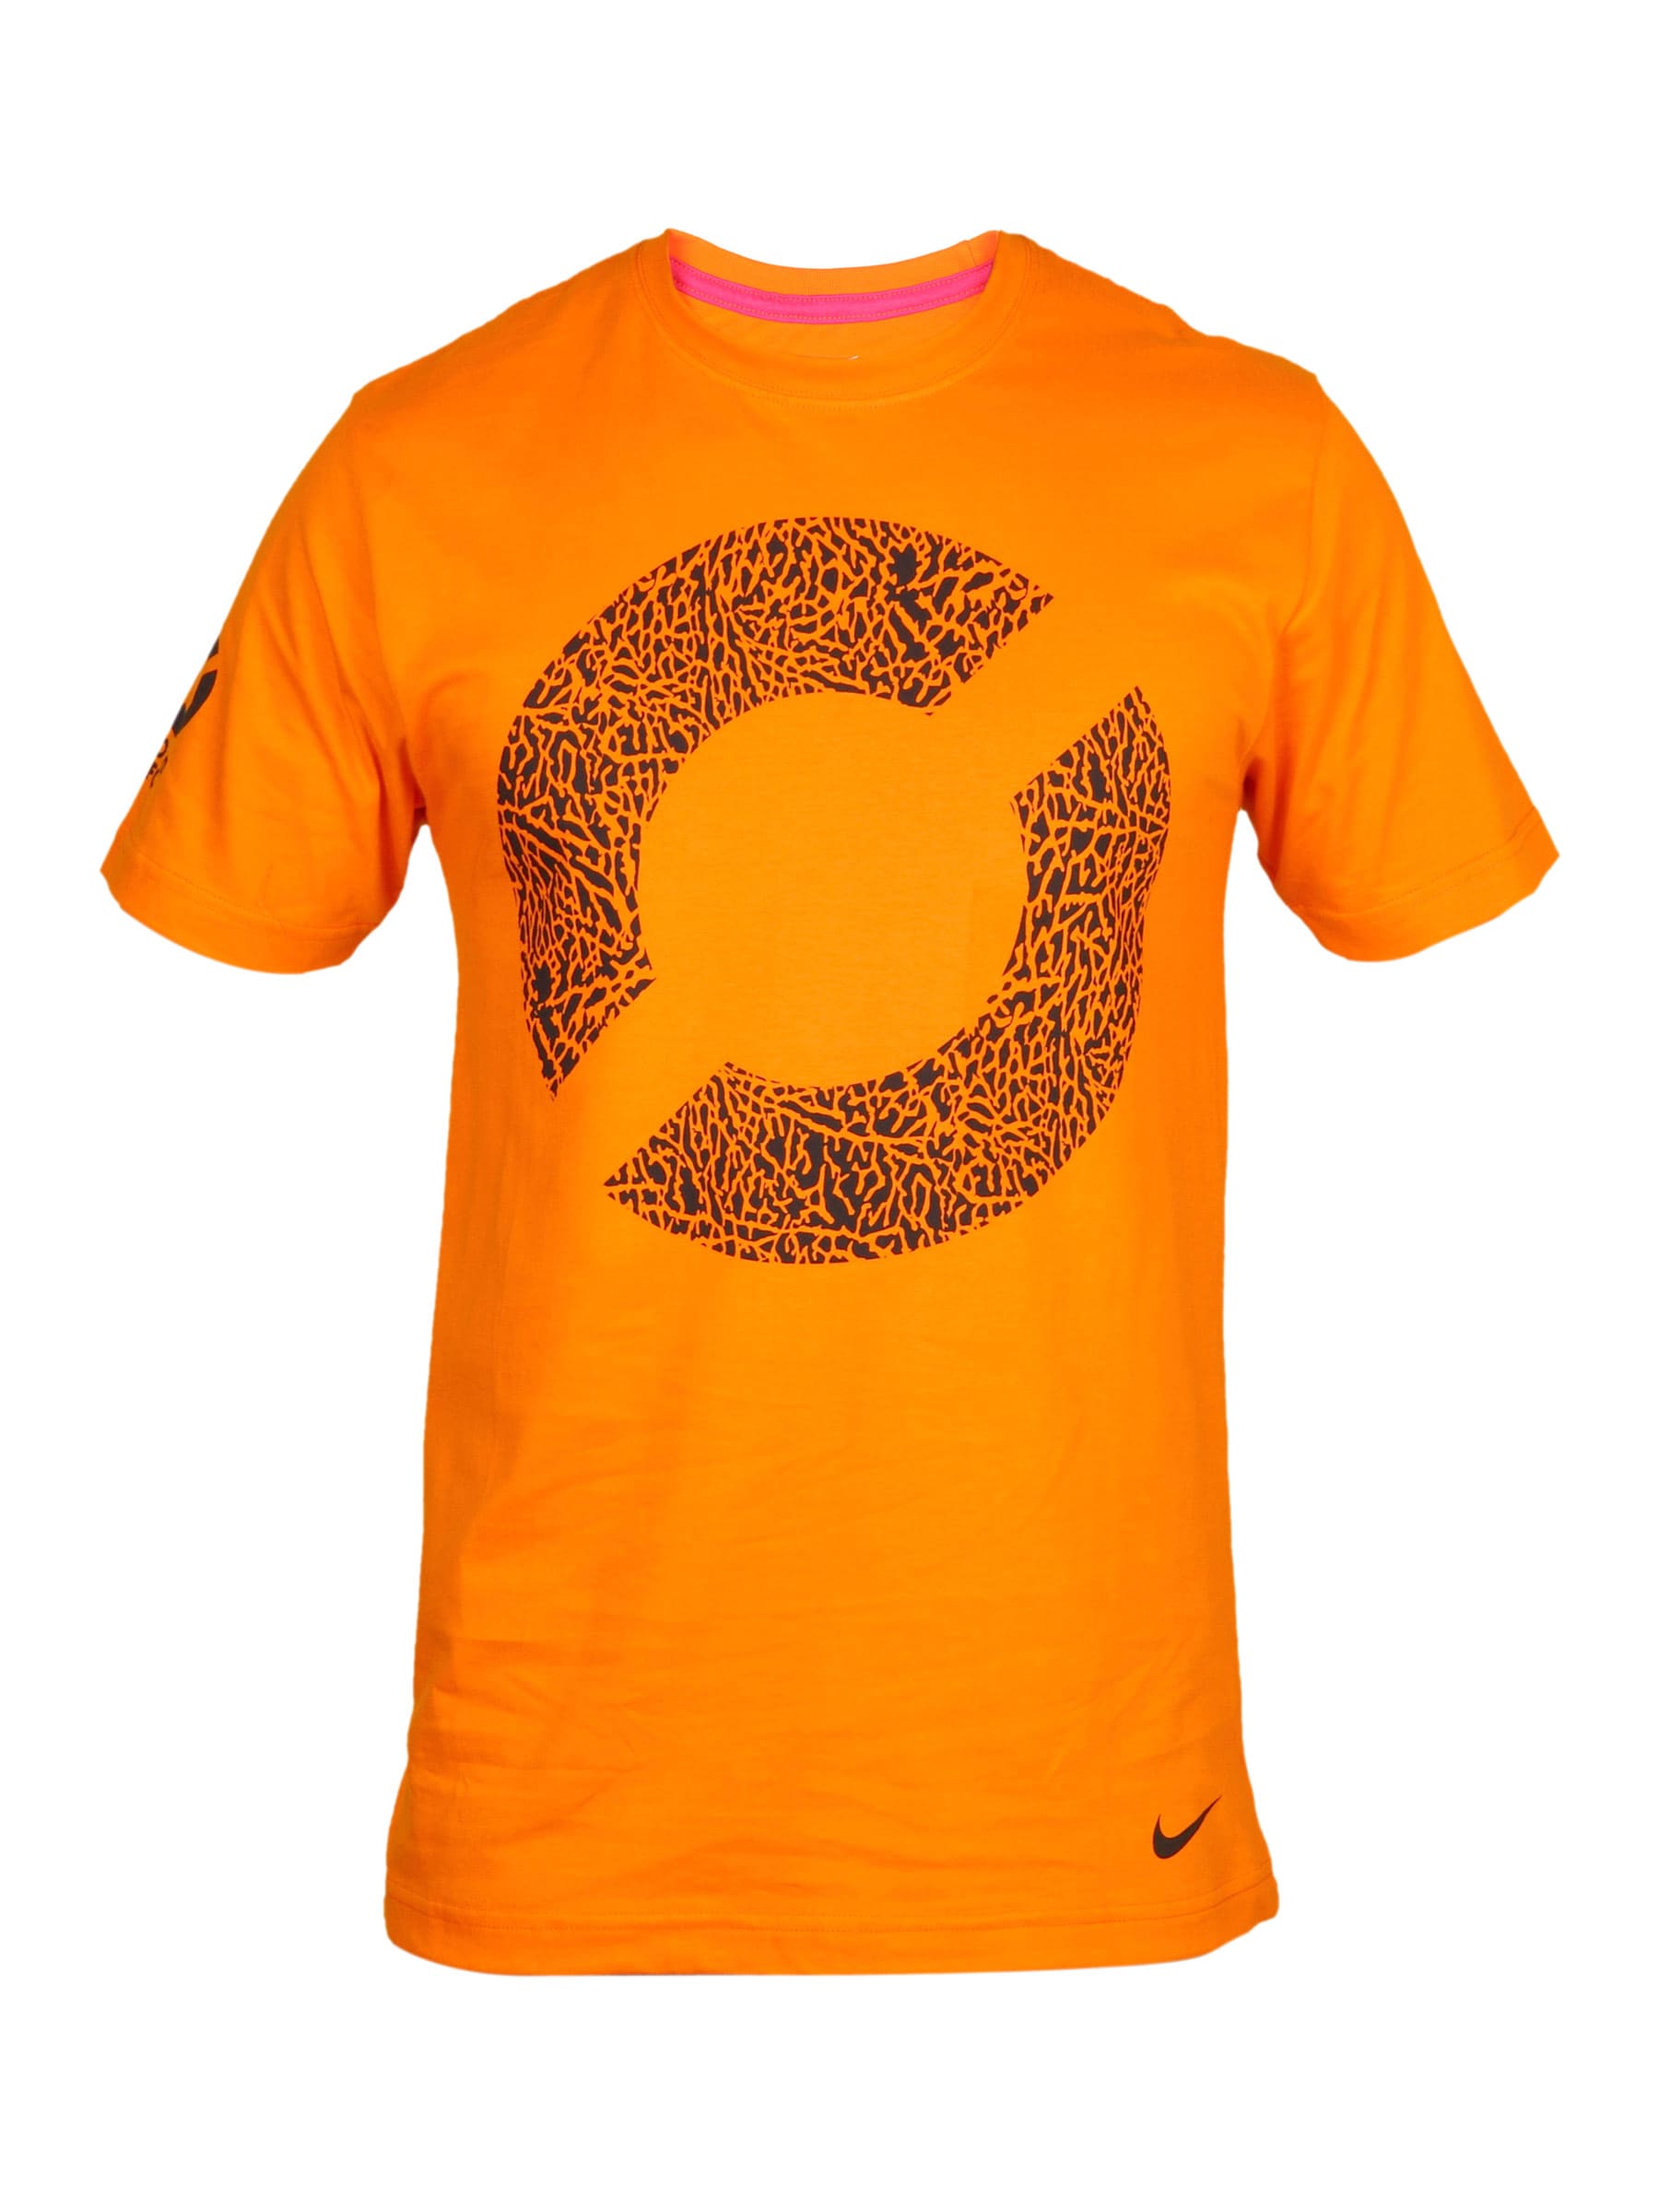 Nike Men's Football Soccer Orange T-shirt